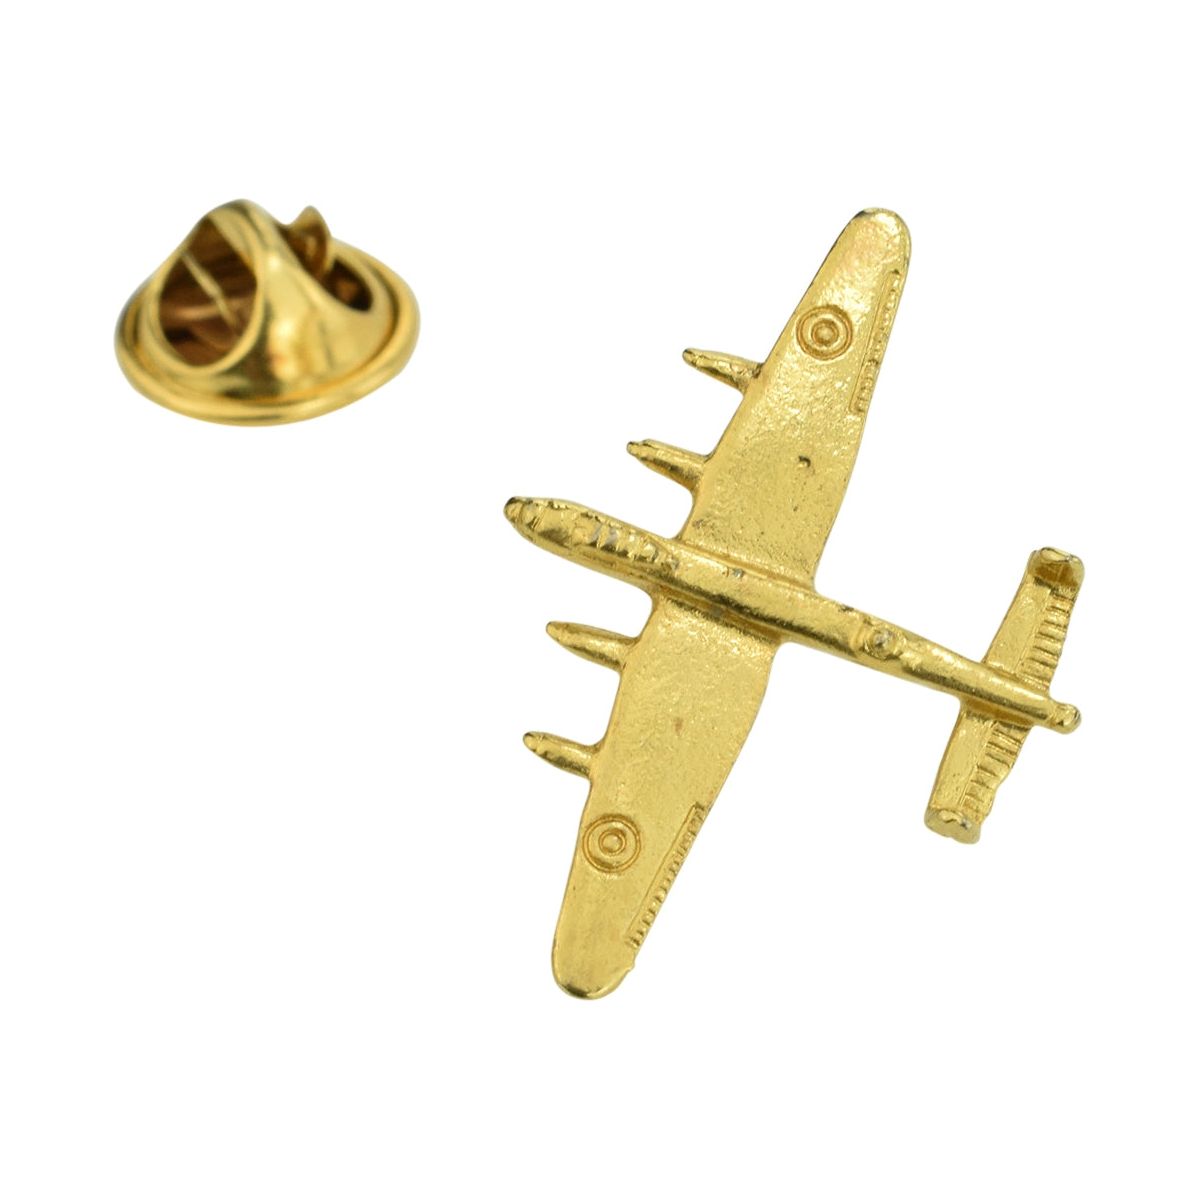 Golden Lancaster Bomber Plane Lapel Pin Badge - Ashton and Finch